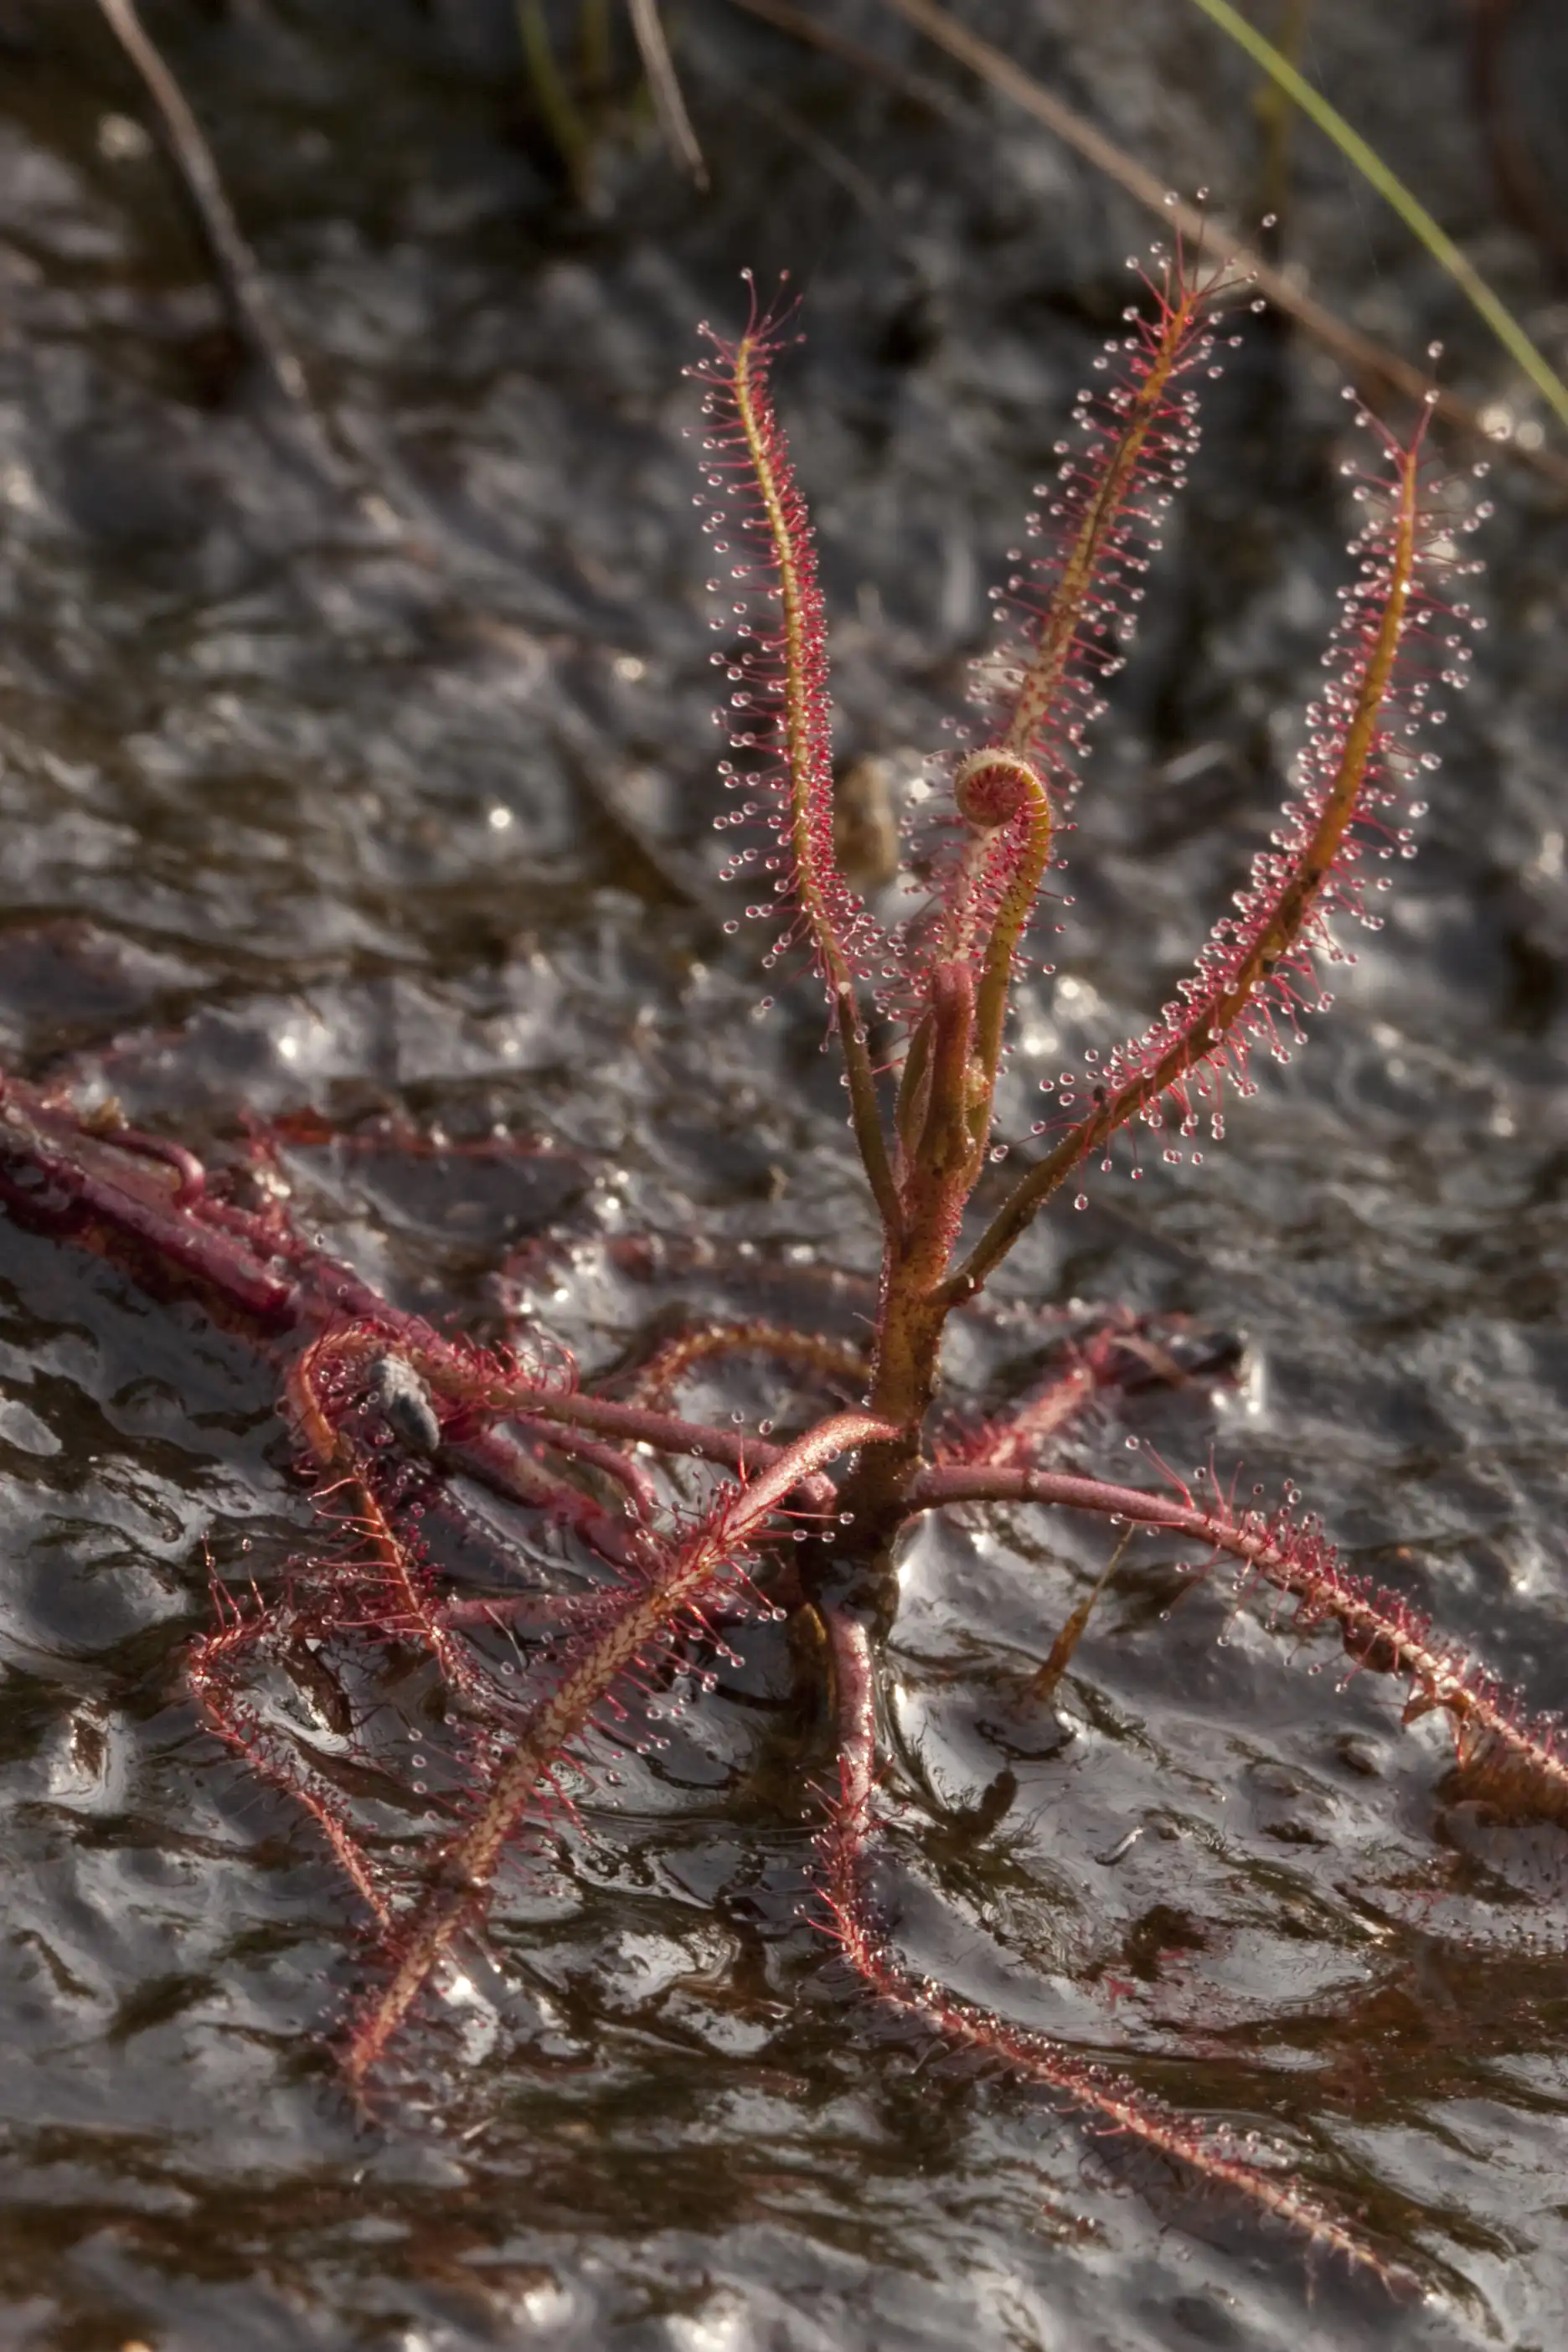 Planta de Drosera indica viviendo en una filtración de agua